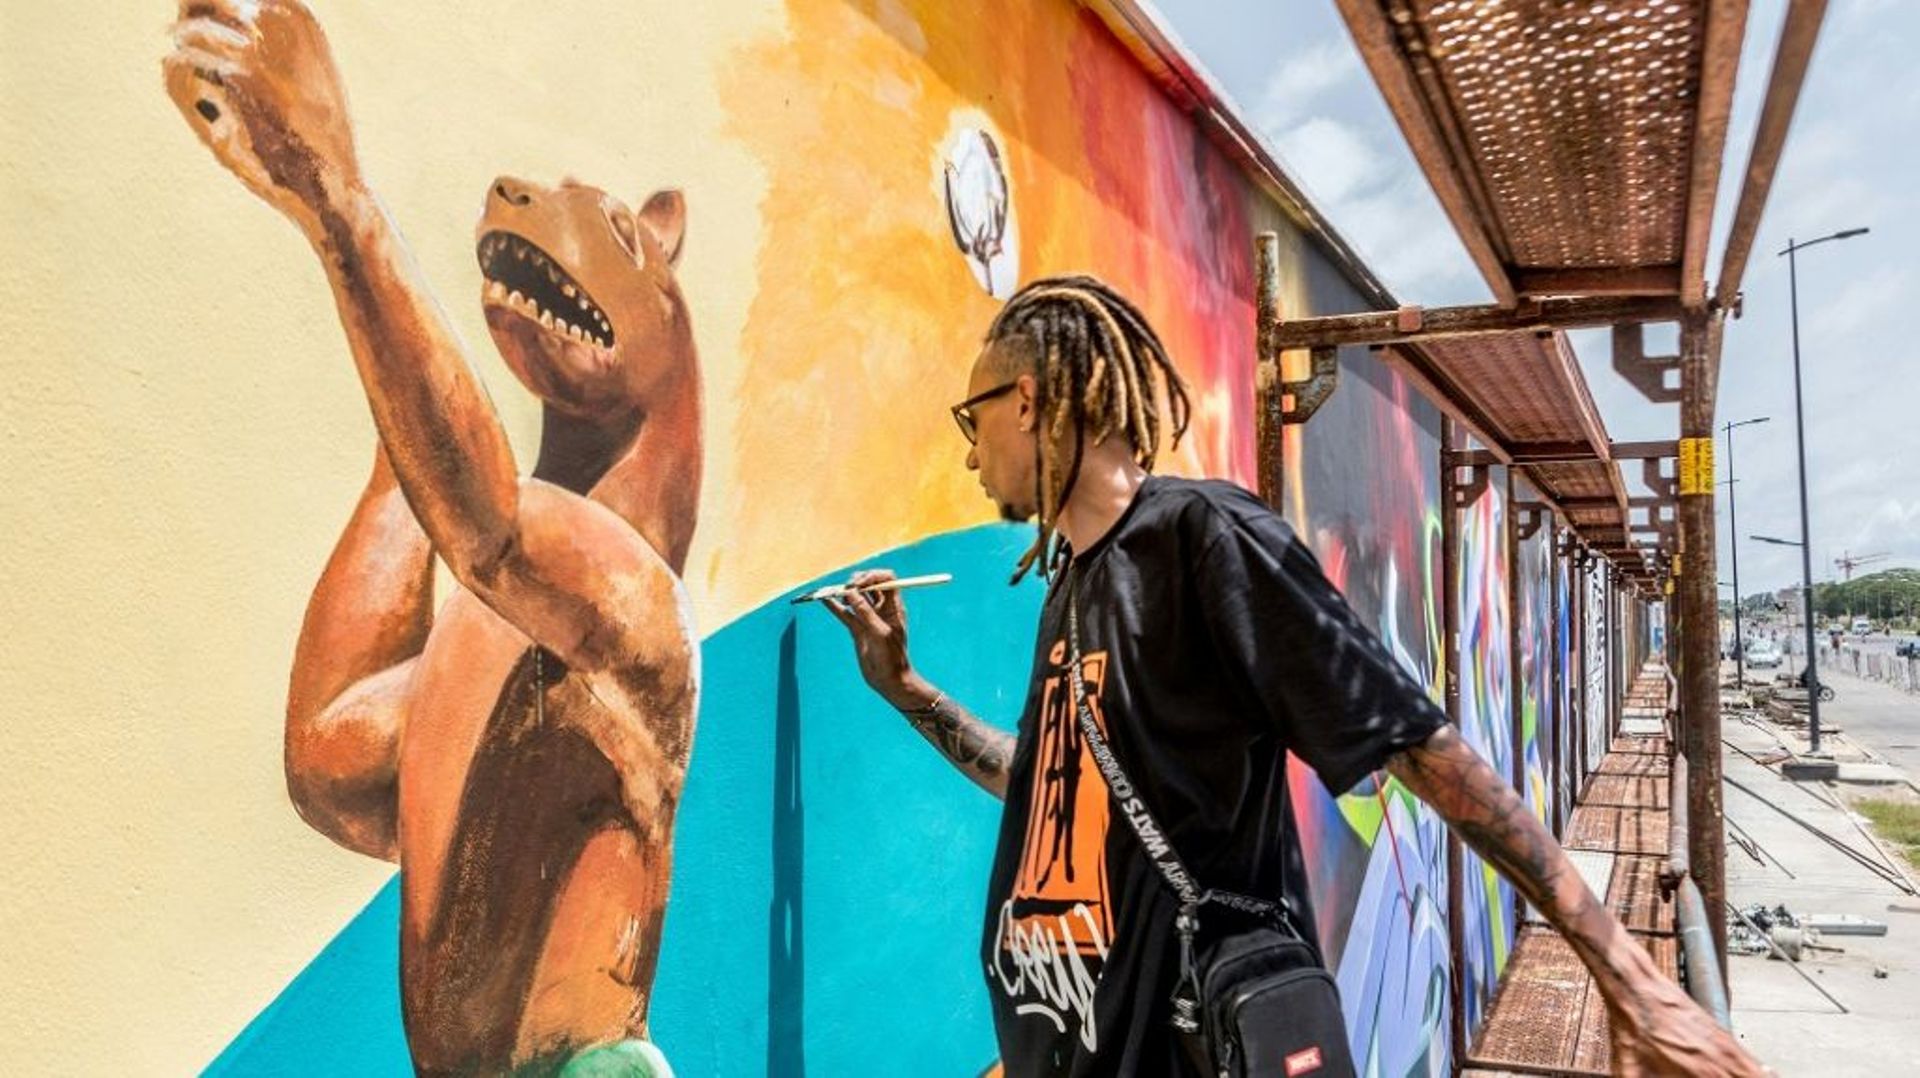 L’artiste brésilien Edgar Bernardo Dos Santos (Ed-Mun) réalise une fresque murale, pendant le festival Effet Graff, le 18 mai 2022 à Cotonou, au Bénin.